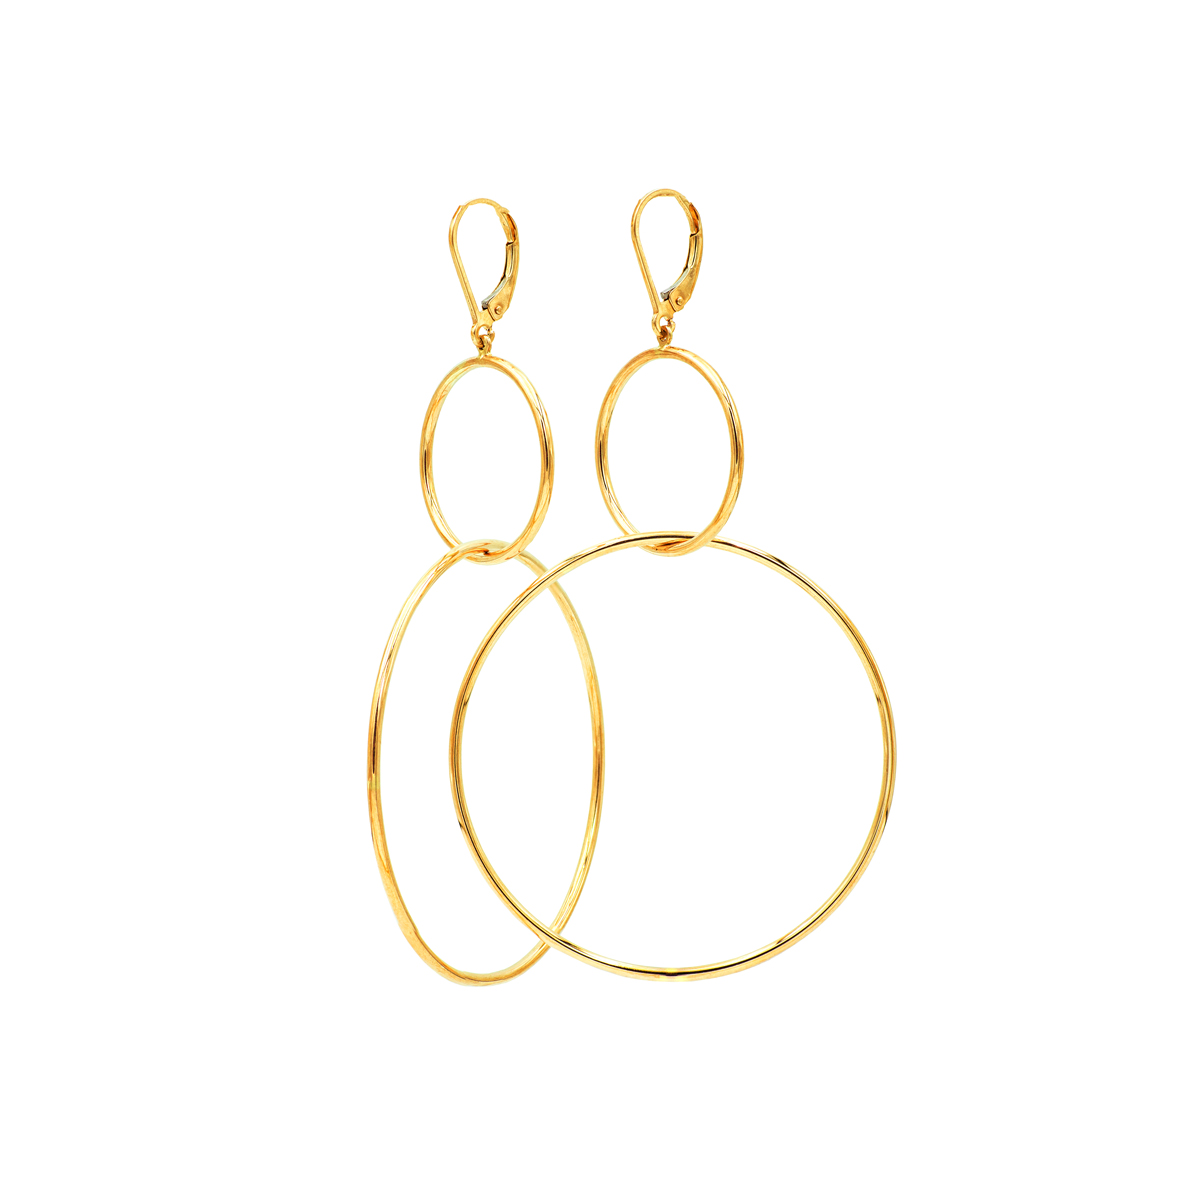 Multi-Hoop Dangle Earrings in 14k Yellow Gold